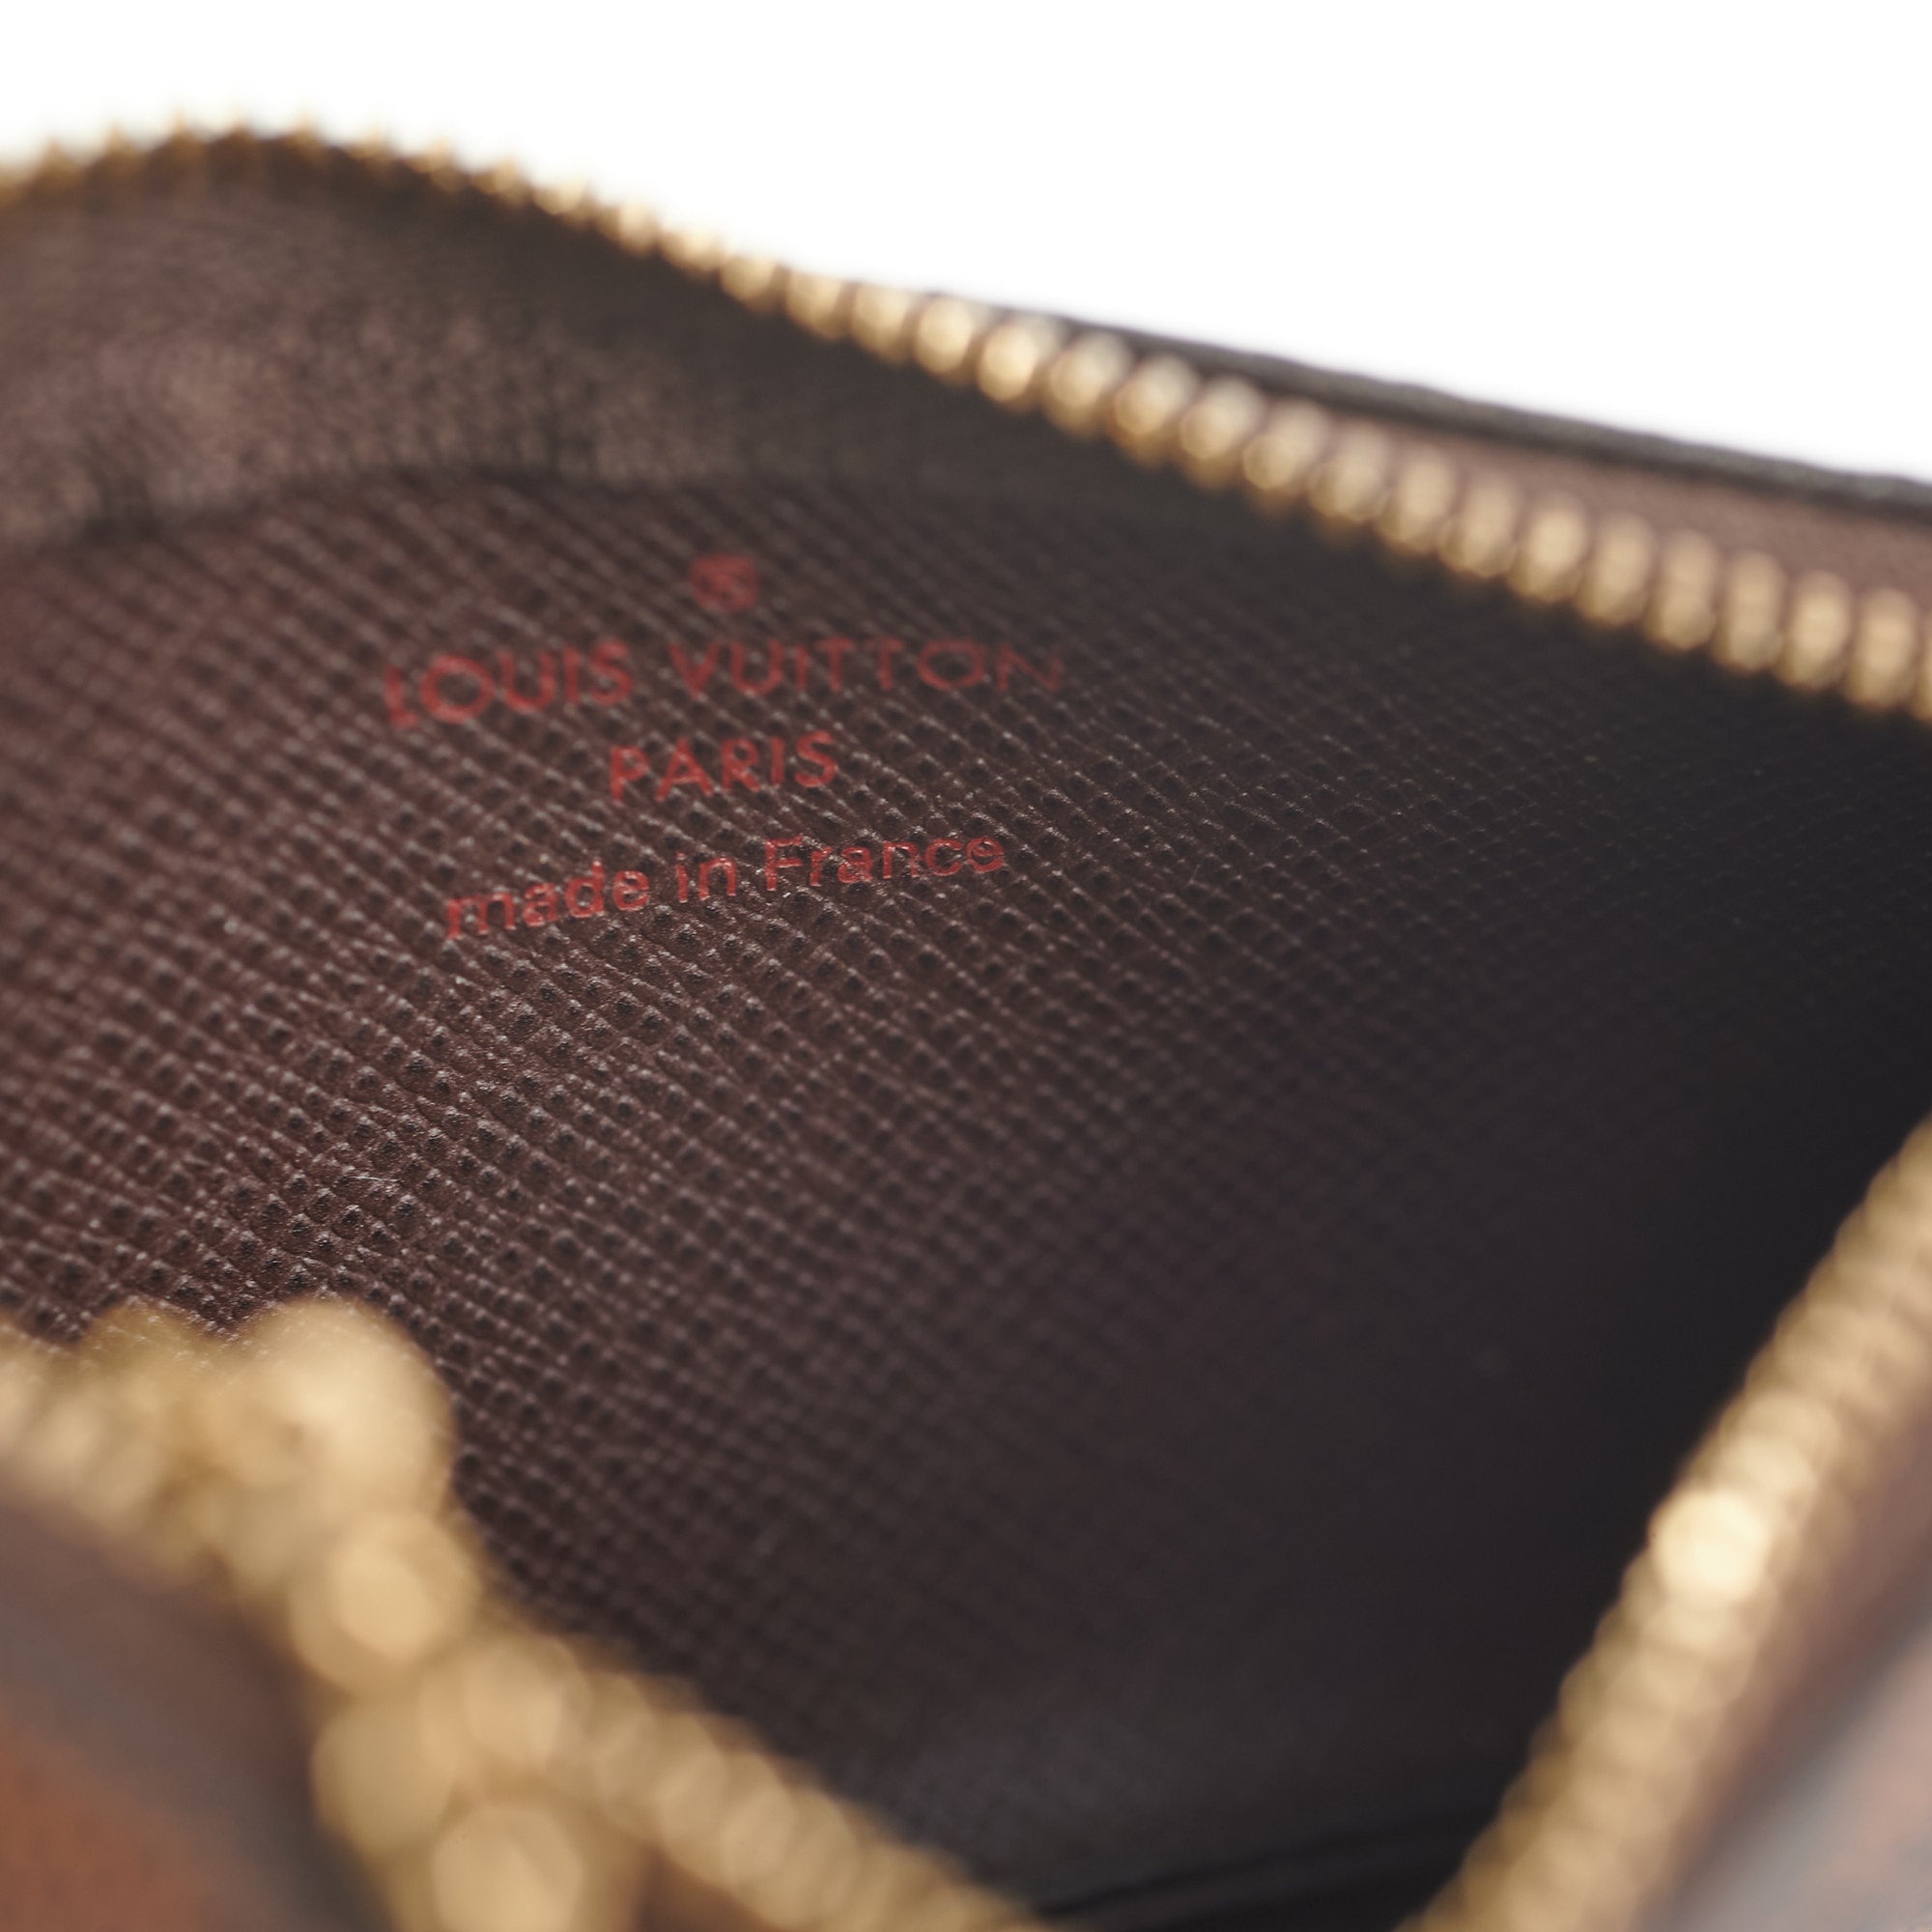 Shop Louis Vuitton Key pouch (M62650, N62658) by SpainSol